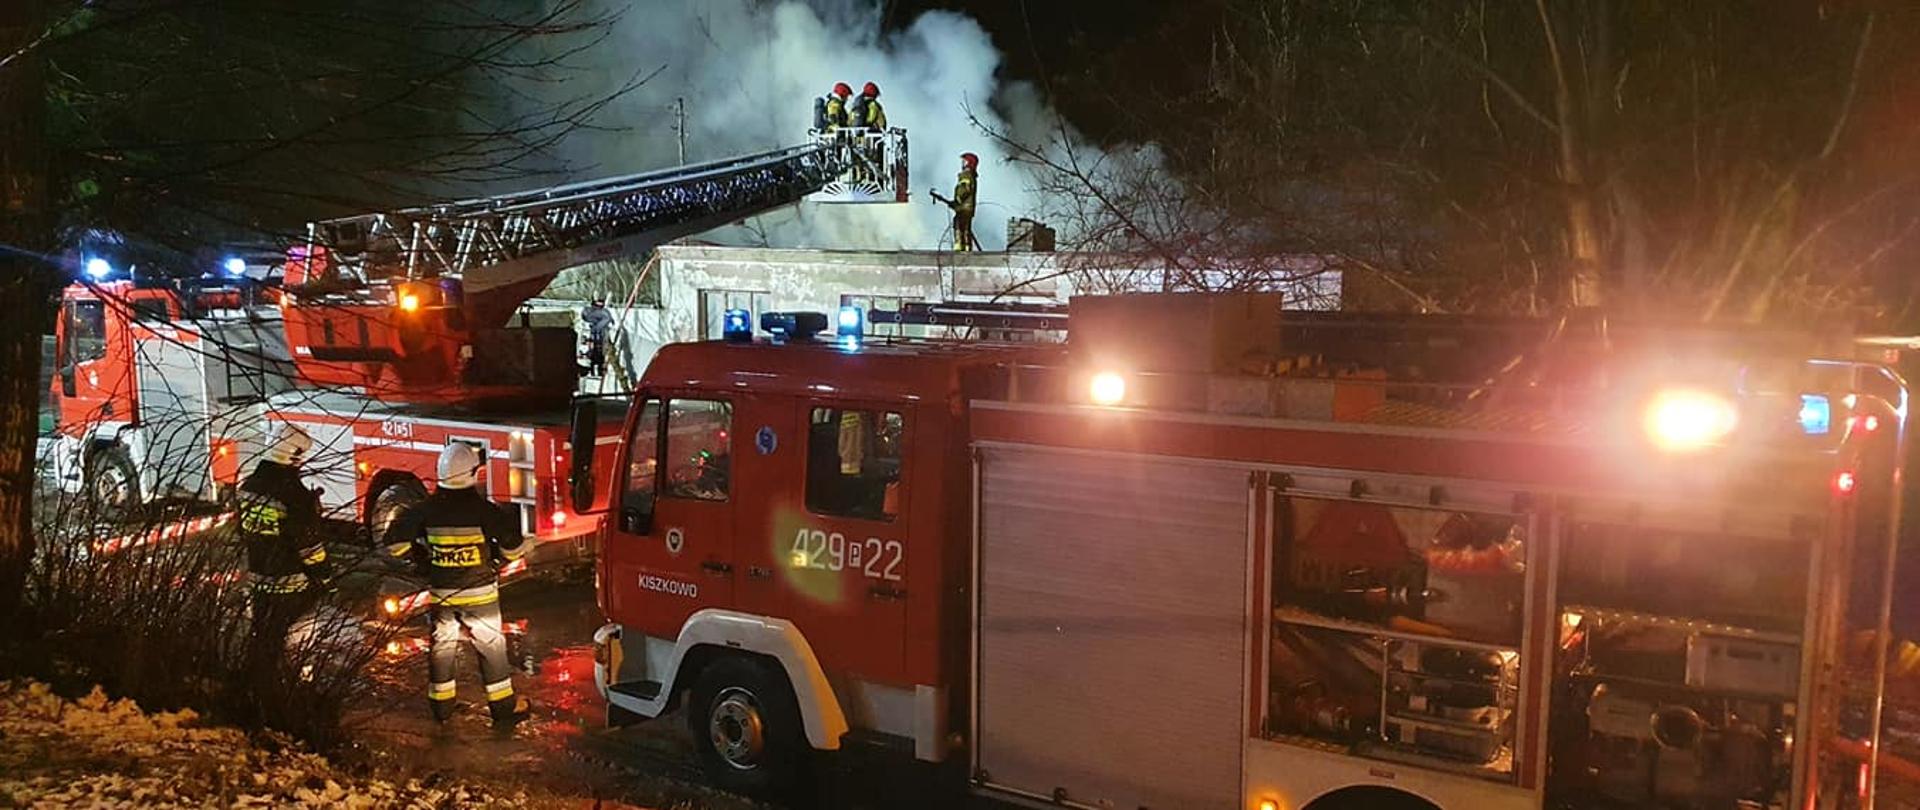 Na zdjęciu widać samochody pożarnicze biorące udział w akcji. W koszu autodrabiny, który jest bezpośrednio nad dachem budynku znajdują się dwóch strażaków. Jest pora nocna, nad budynkiem unosi się dym. Na dachu stoi strażak z wężem pożarniczym